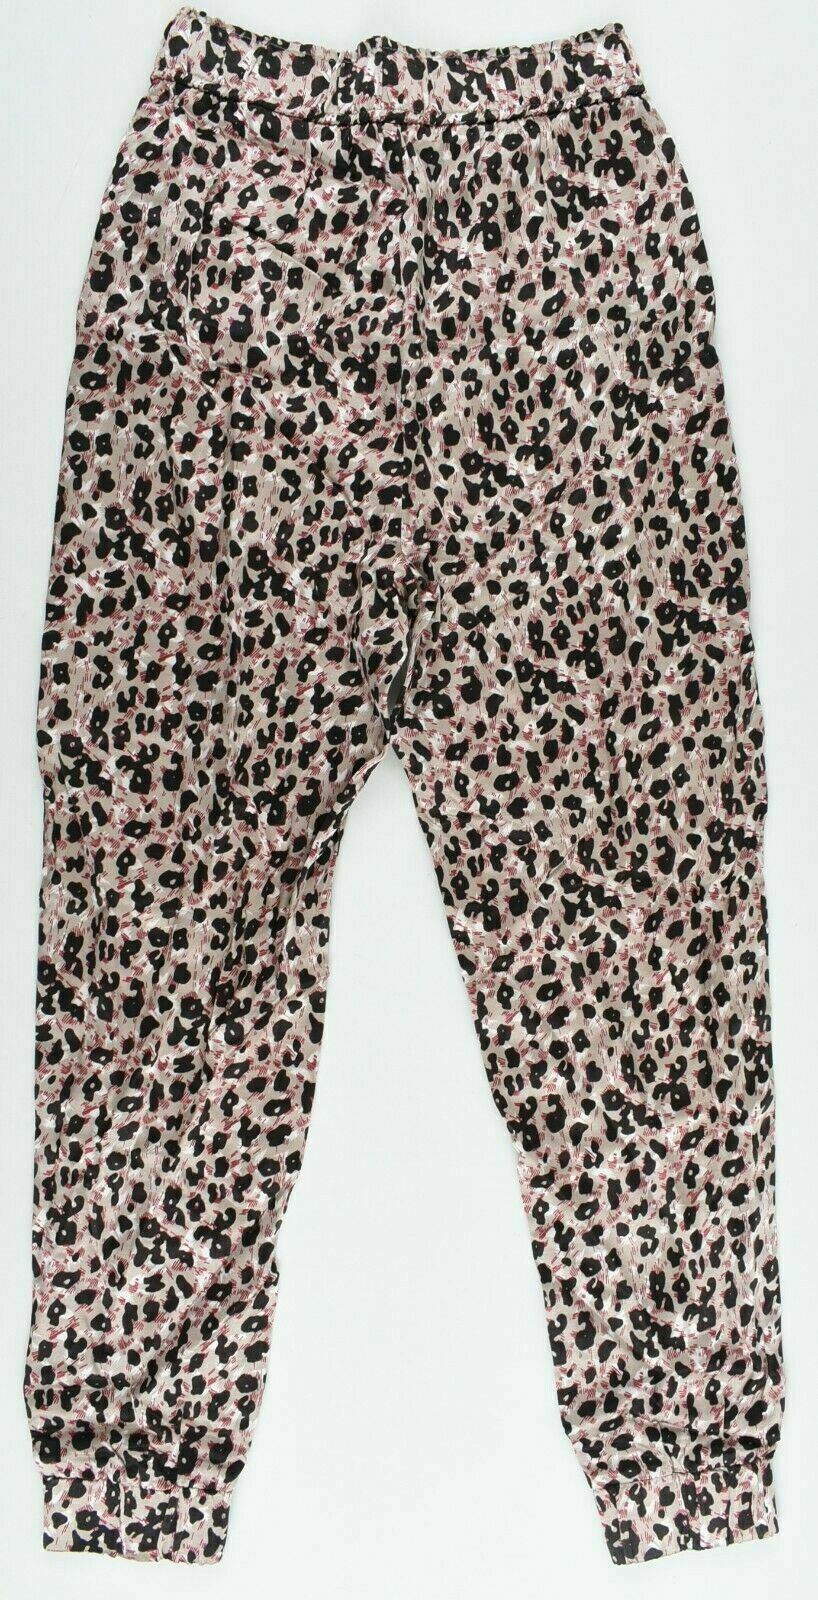 ZARA Women's Leopard Print Loungewear, Pyjama Bottoms, Nightwear size S